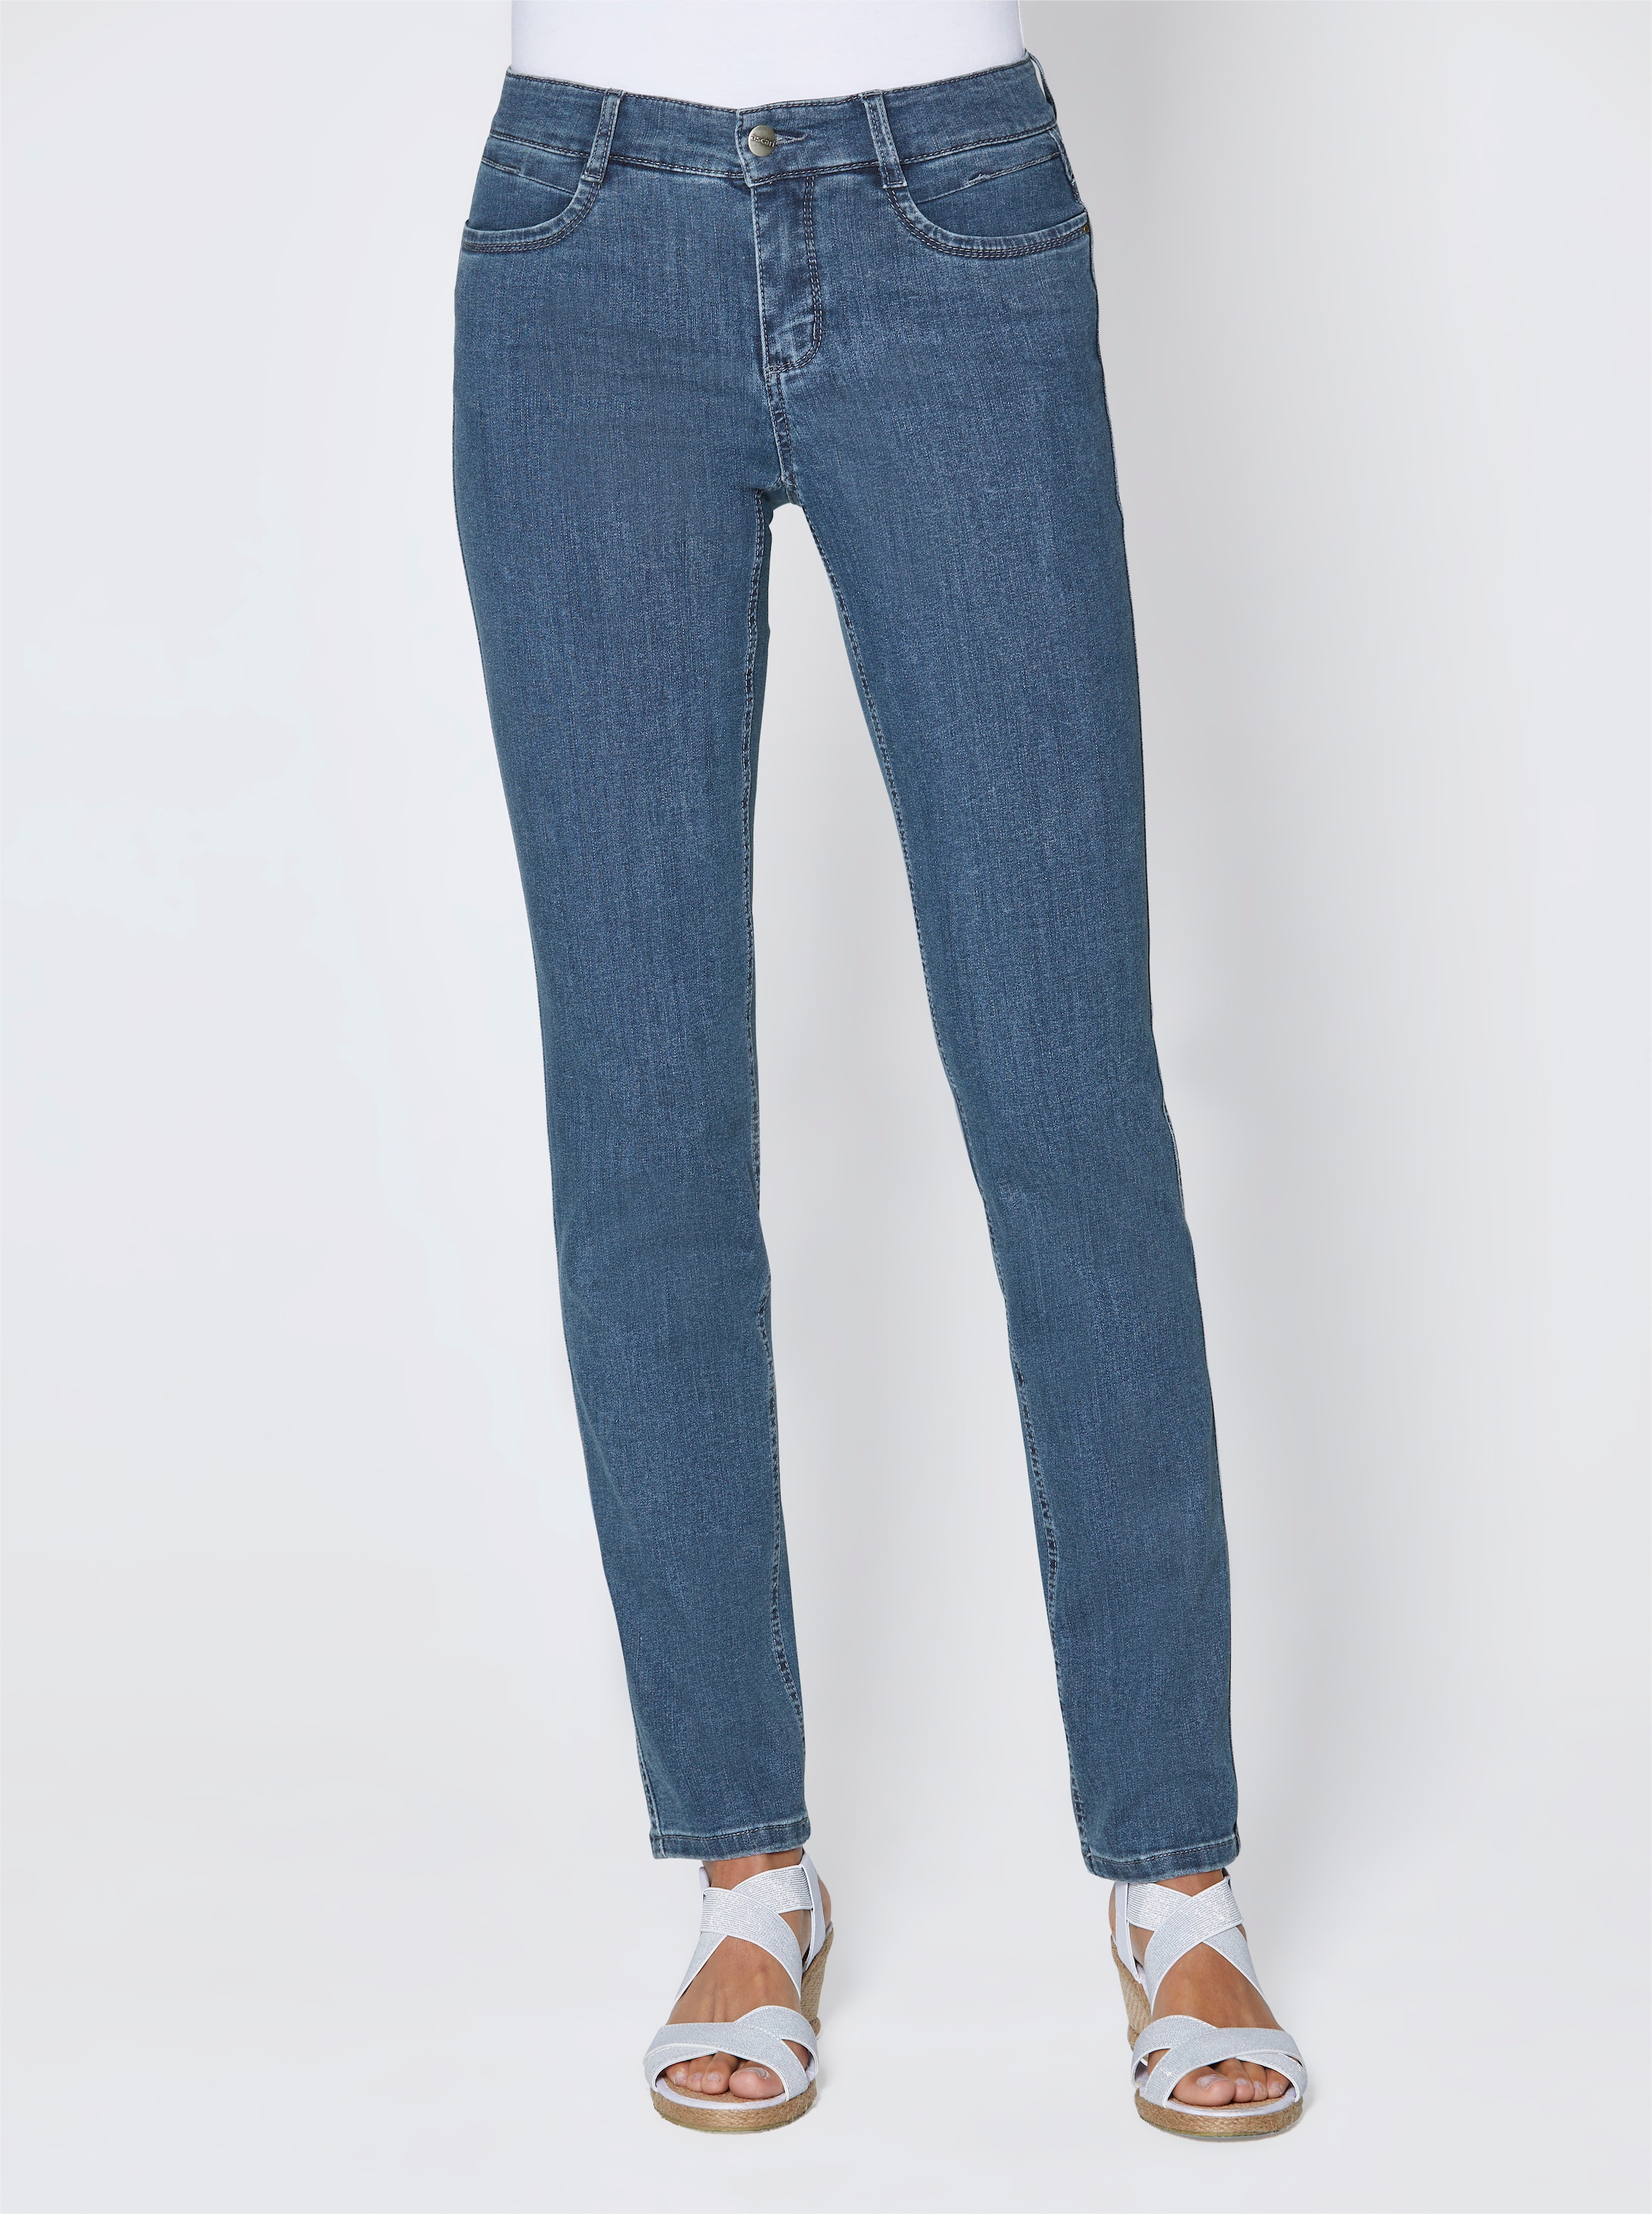 for HR günstig Kaufen-Stretch-Jeans in jeansblau von Ascari. Stretch-Jeans in jeansblau von Ascari <![CDATA[Perfekt zur aktuellen Mode! Edel-Jeans in schmaler Röhrenform. Sitzt super und ist herrlich bequem dank der bi-elastischen Superstretch-Qualität. Unser Tipp: Für eine